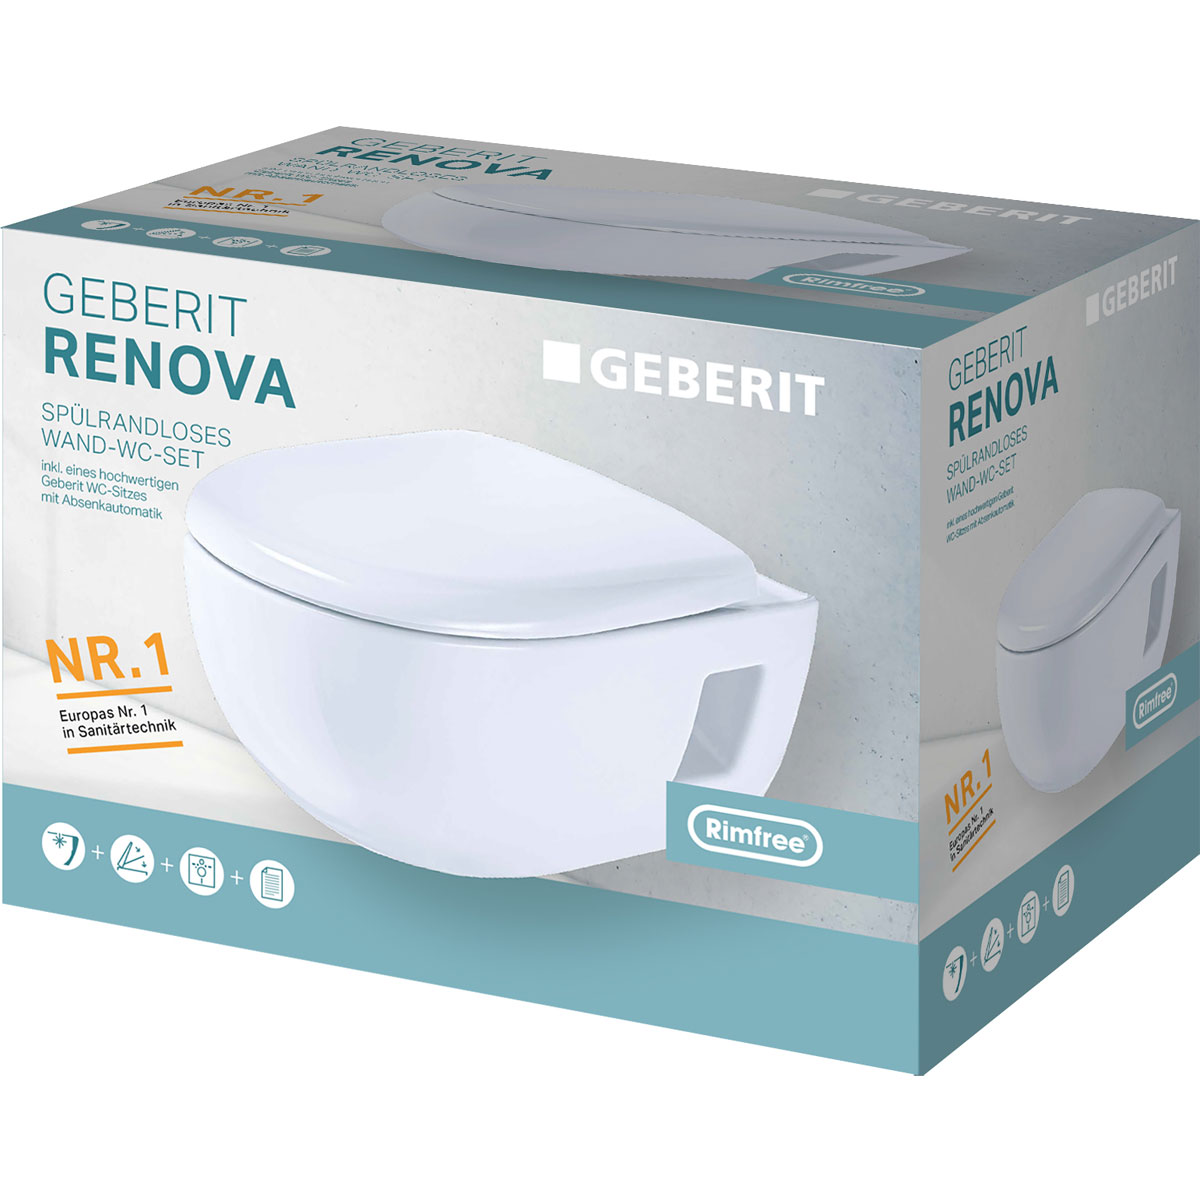 Geberit spülrandlos Renova Premium Wand-WC WC-Sitz 273139 | inkl Tiefspül